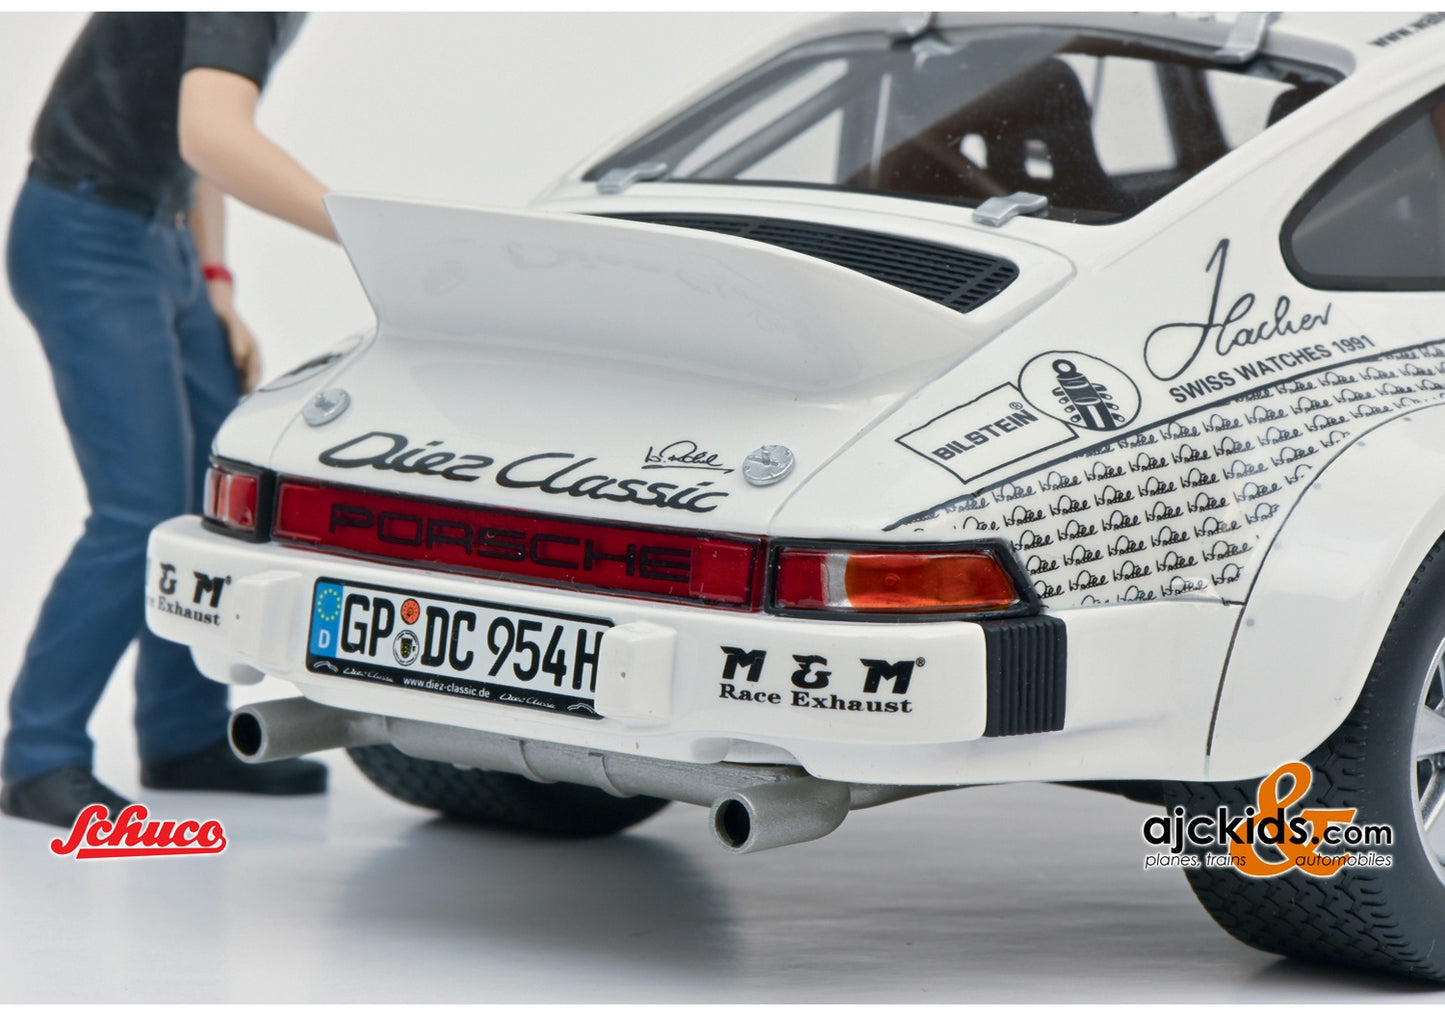 Schuco 450024900 - Porsche 911 RÖHRL x911 1:18